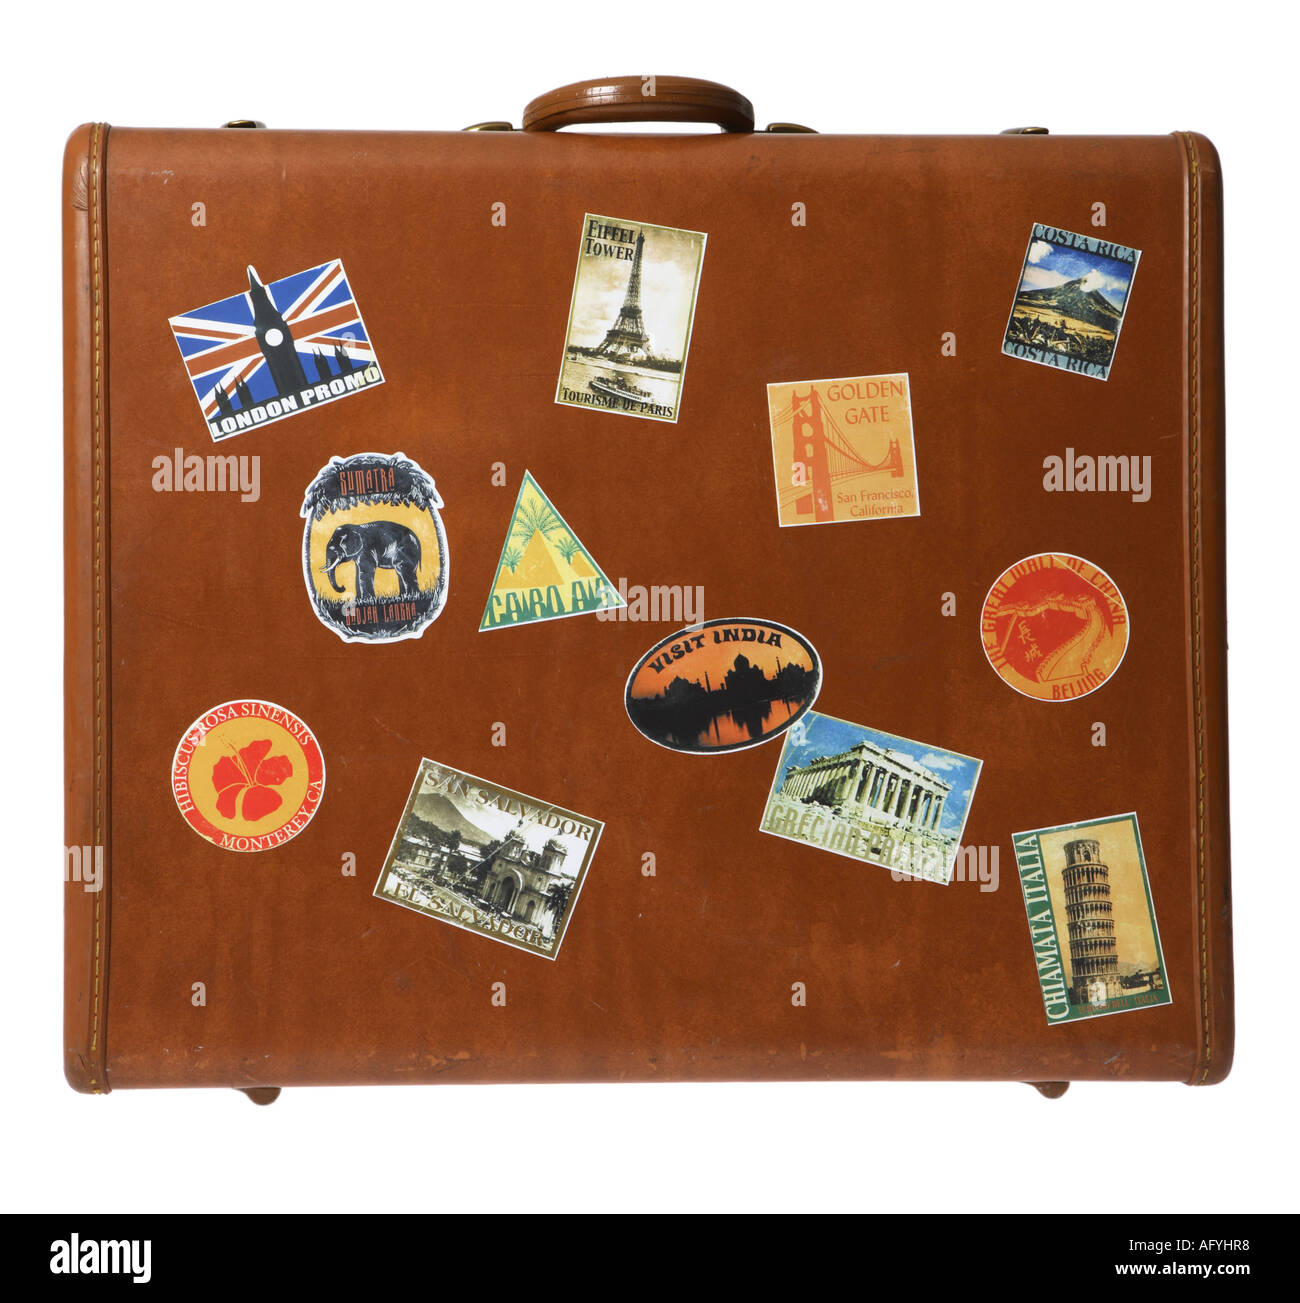 Seitenansicht der Koffer mit Reisen Aufkleber Stockfotografie - Alamy